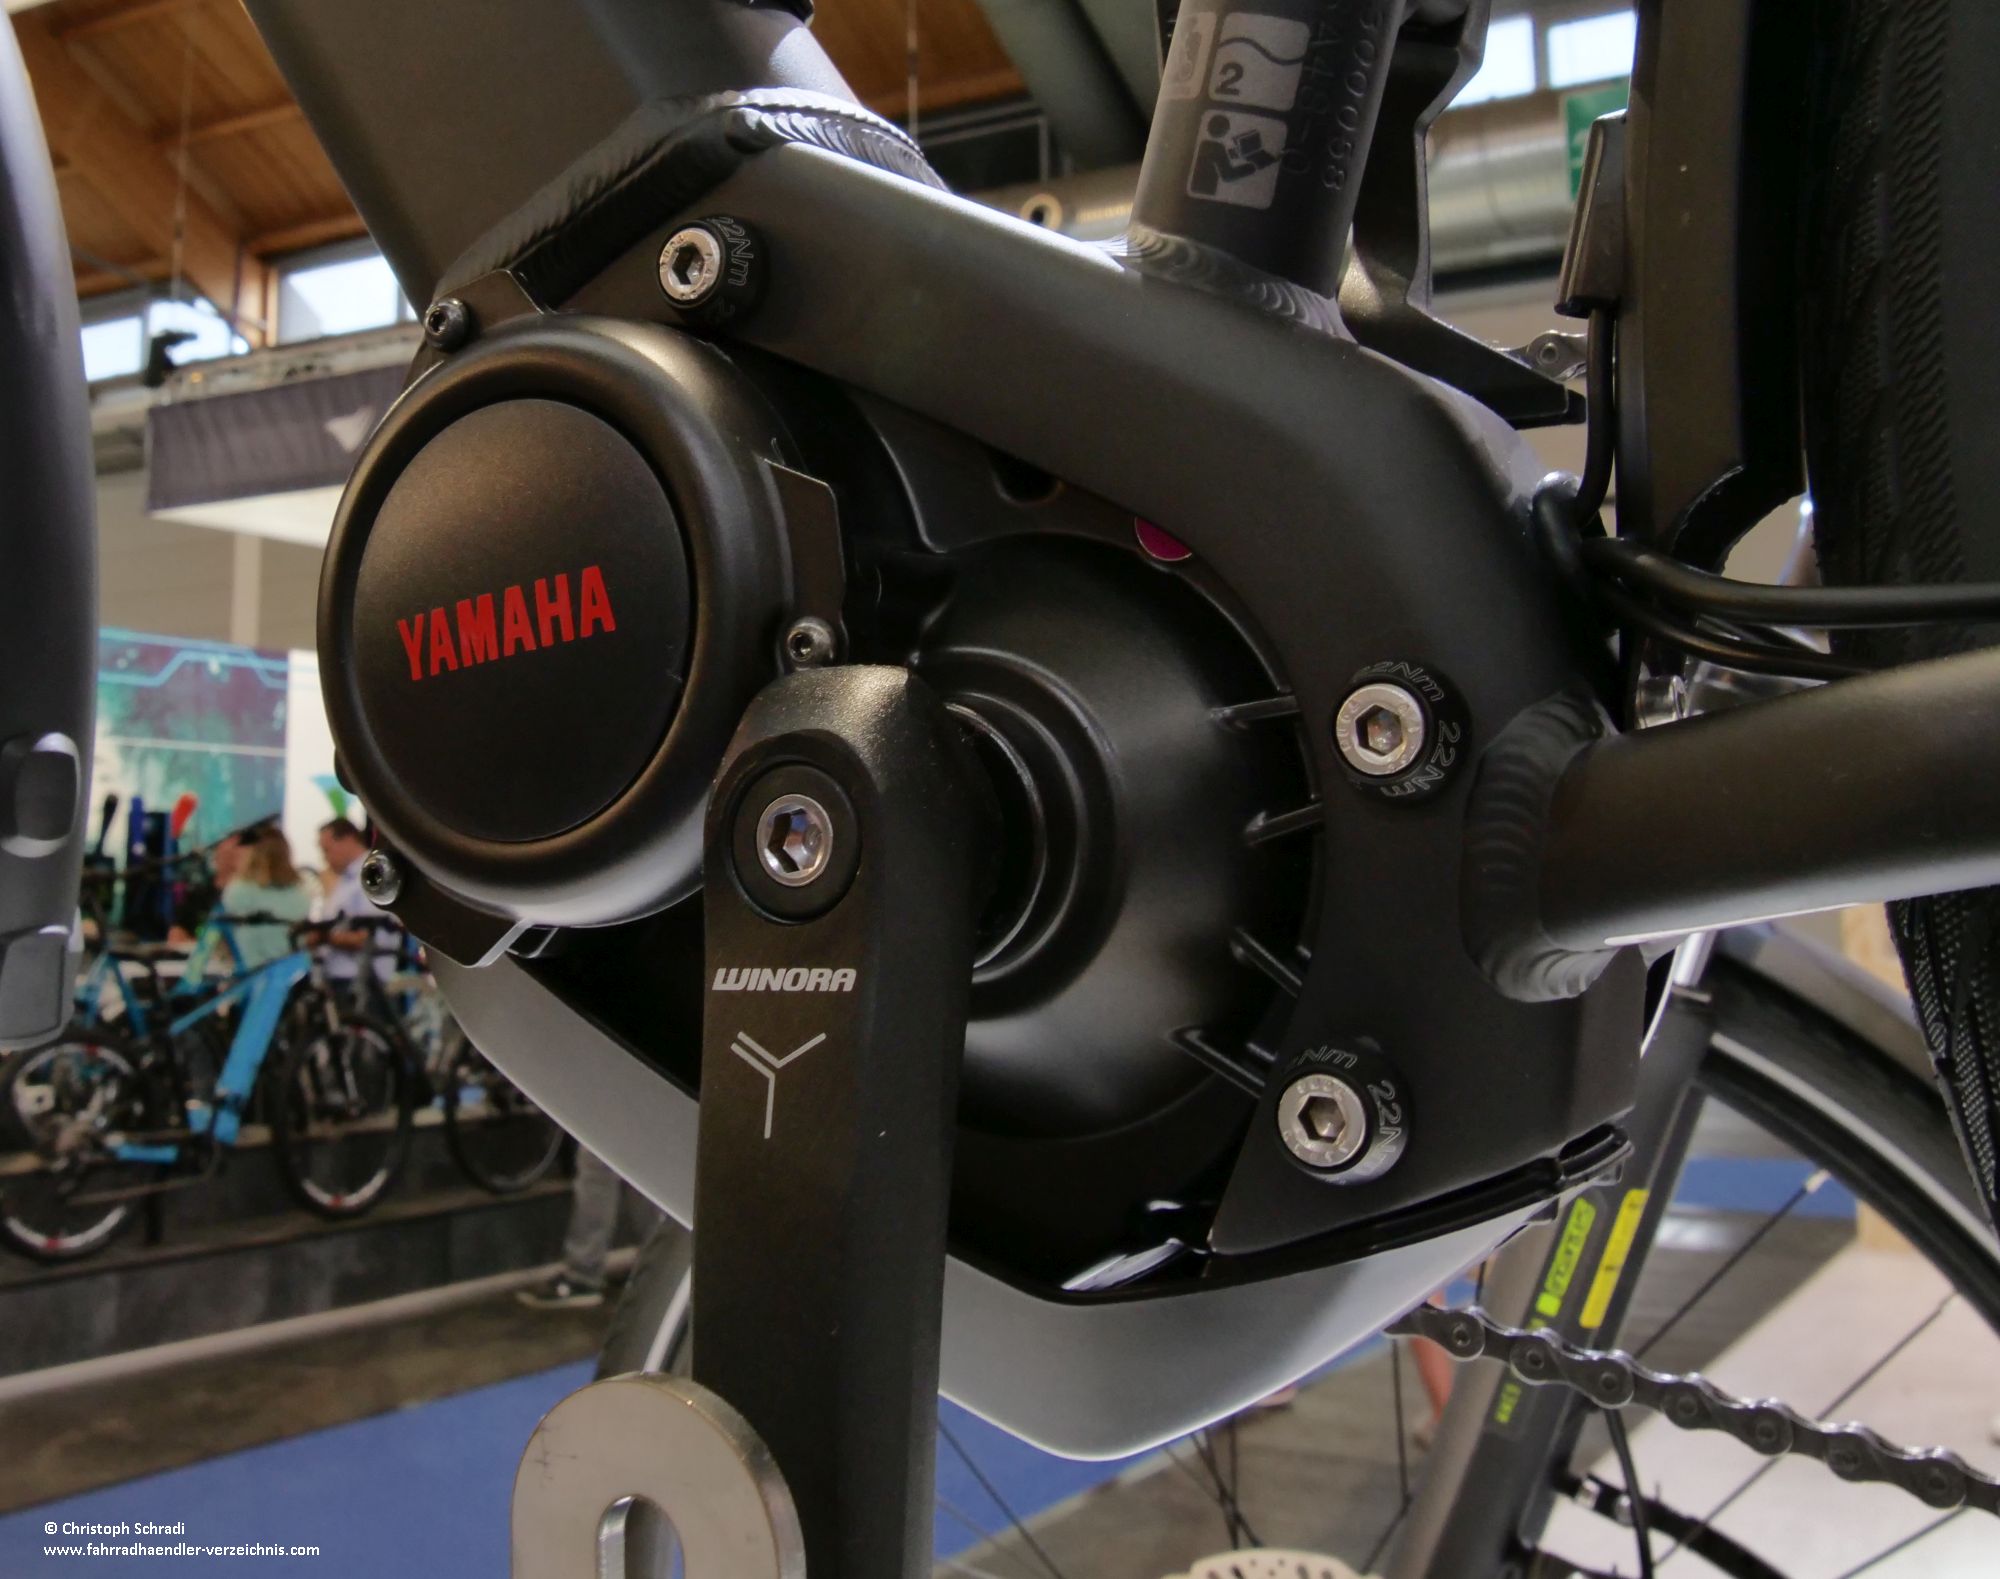 Der Yamaha PW-TE Antrieb ist der erste Yamaha Antrieb mit Vollautomatik. Je nach Fahrsituation wählt der Antrieb dank vier Sensoren automatisch die passende Unterstützungsstufe